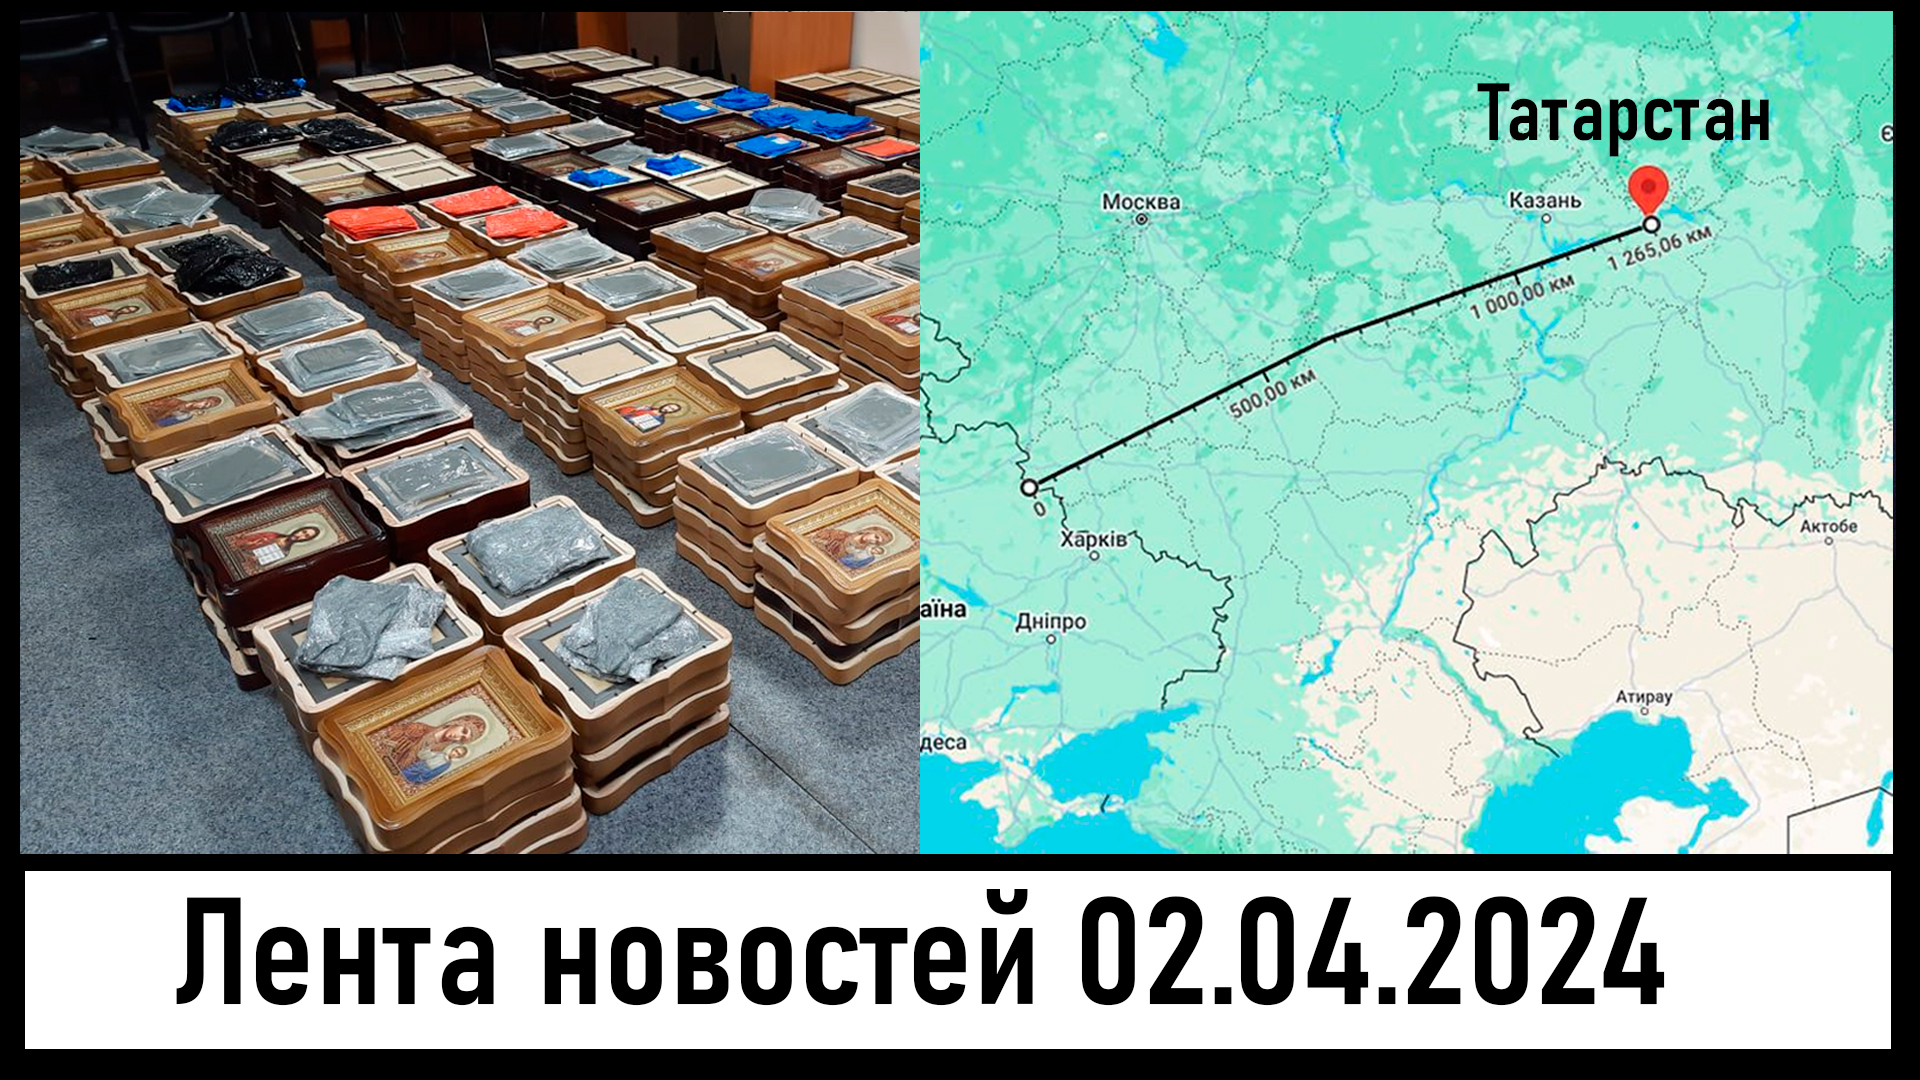 ФСБ нашли бомбы в иконах! Атака БПЛА на Татарстан! Лента новостей 02.04.2024